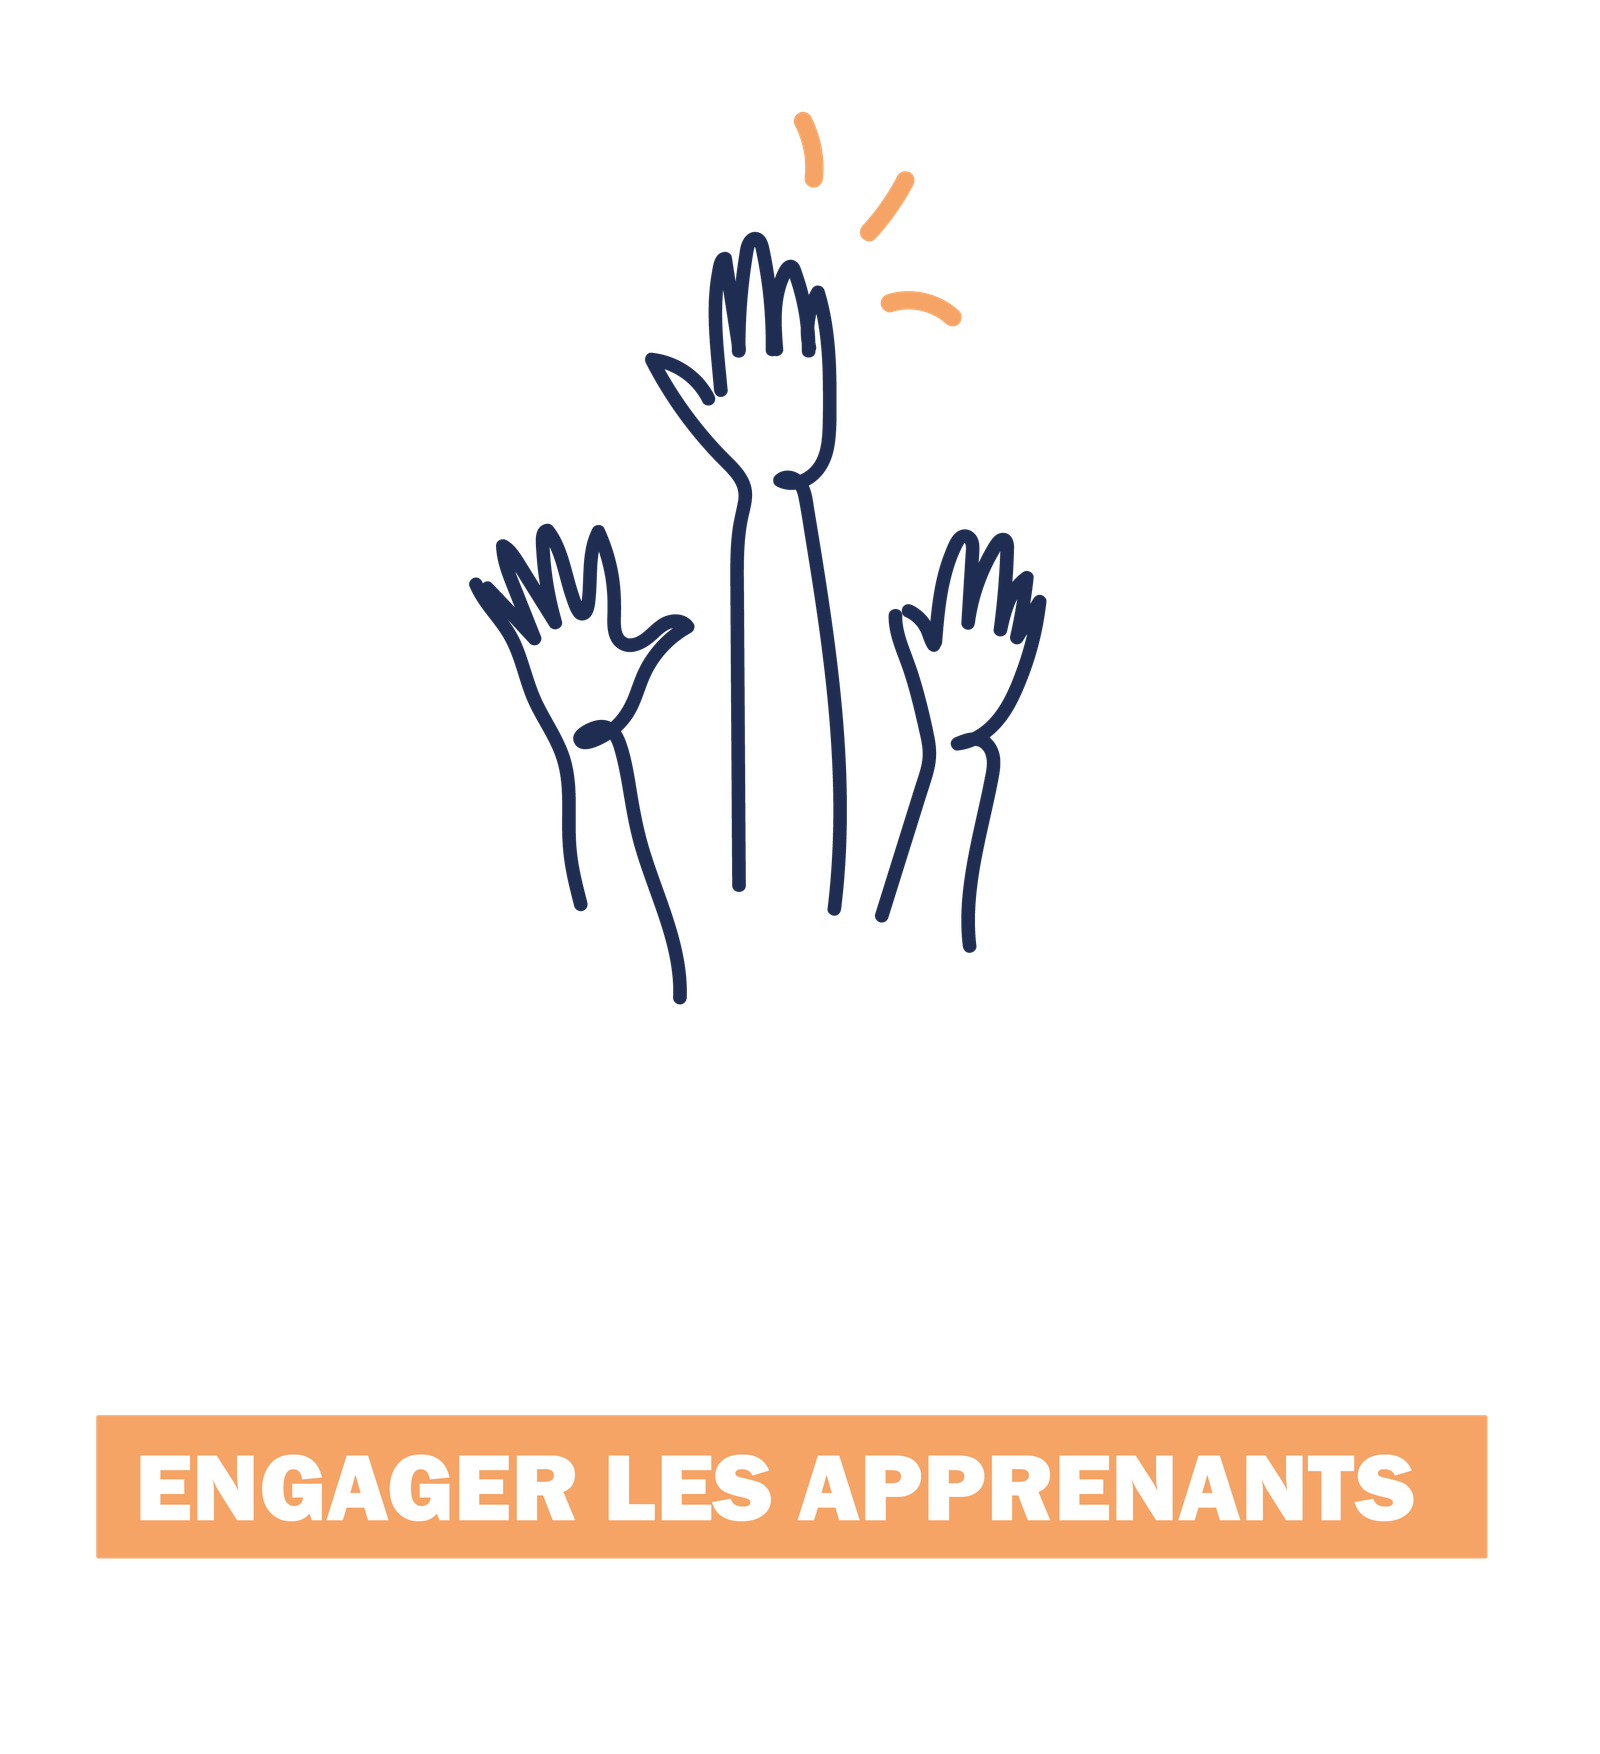 illustration de plusieurs mains se levant ensemble avec le titre "ENGAGER LES APPRENANTS"